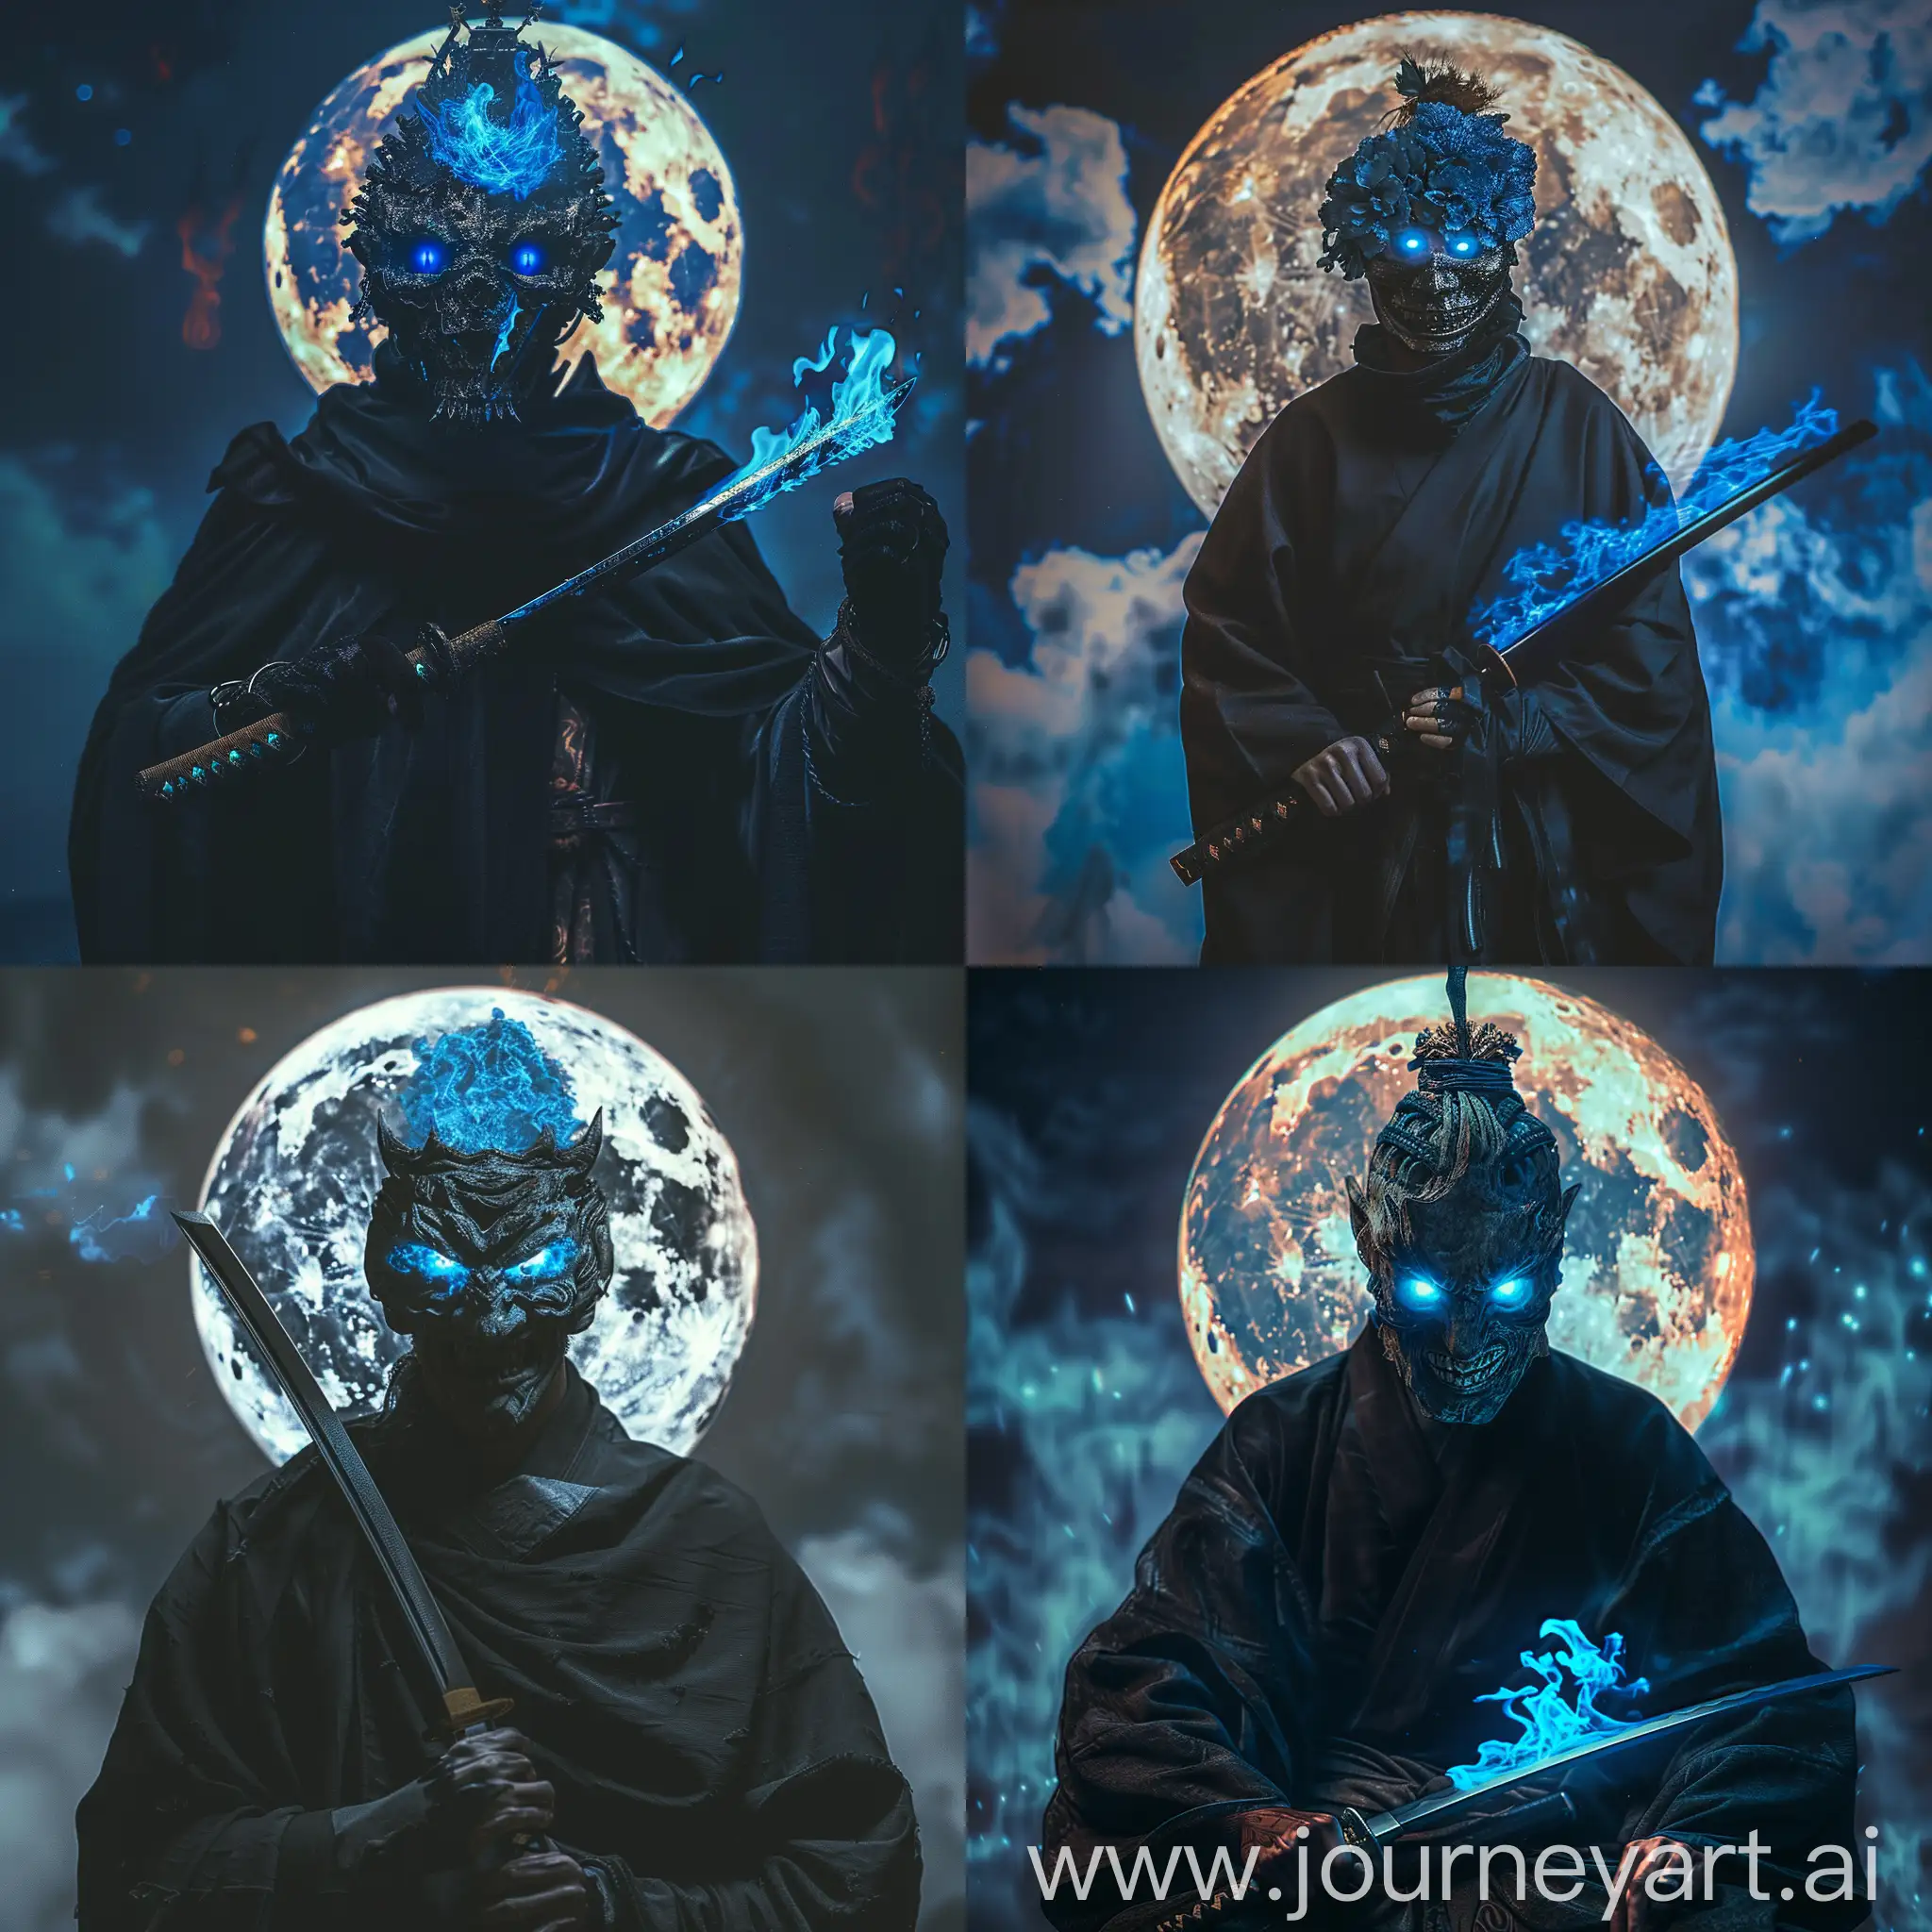 Апокалиптическая антиутопия, реалистичное фото, человек, мужчина в черной мантии, в руках у мужчины катана пылающая синим пламенем, на голове у мужчины страшная маска, с горящими синими глазами. На заднем фоне светящаяся луна.